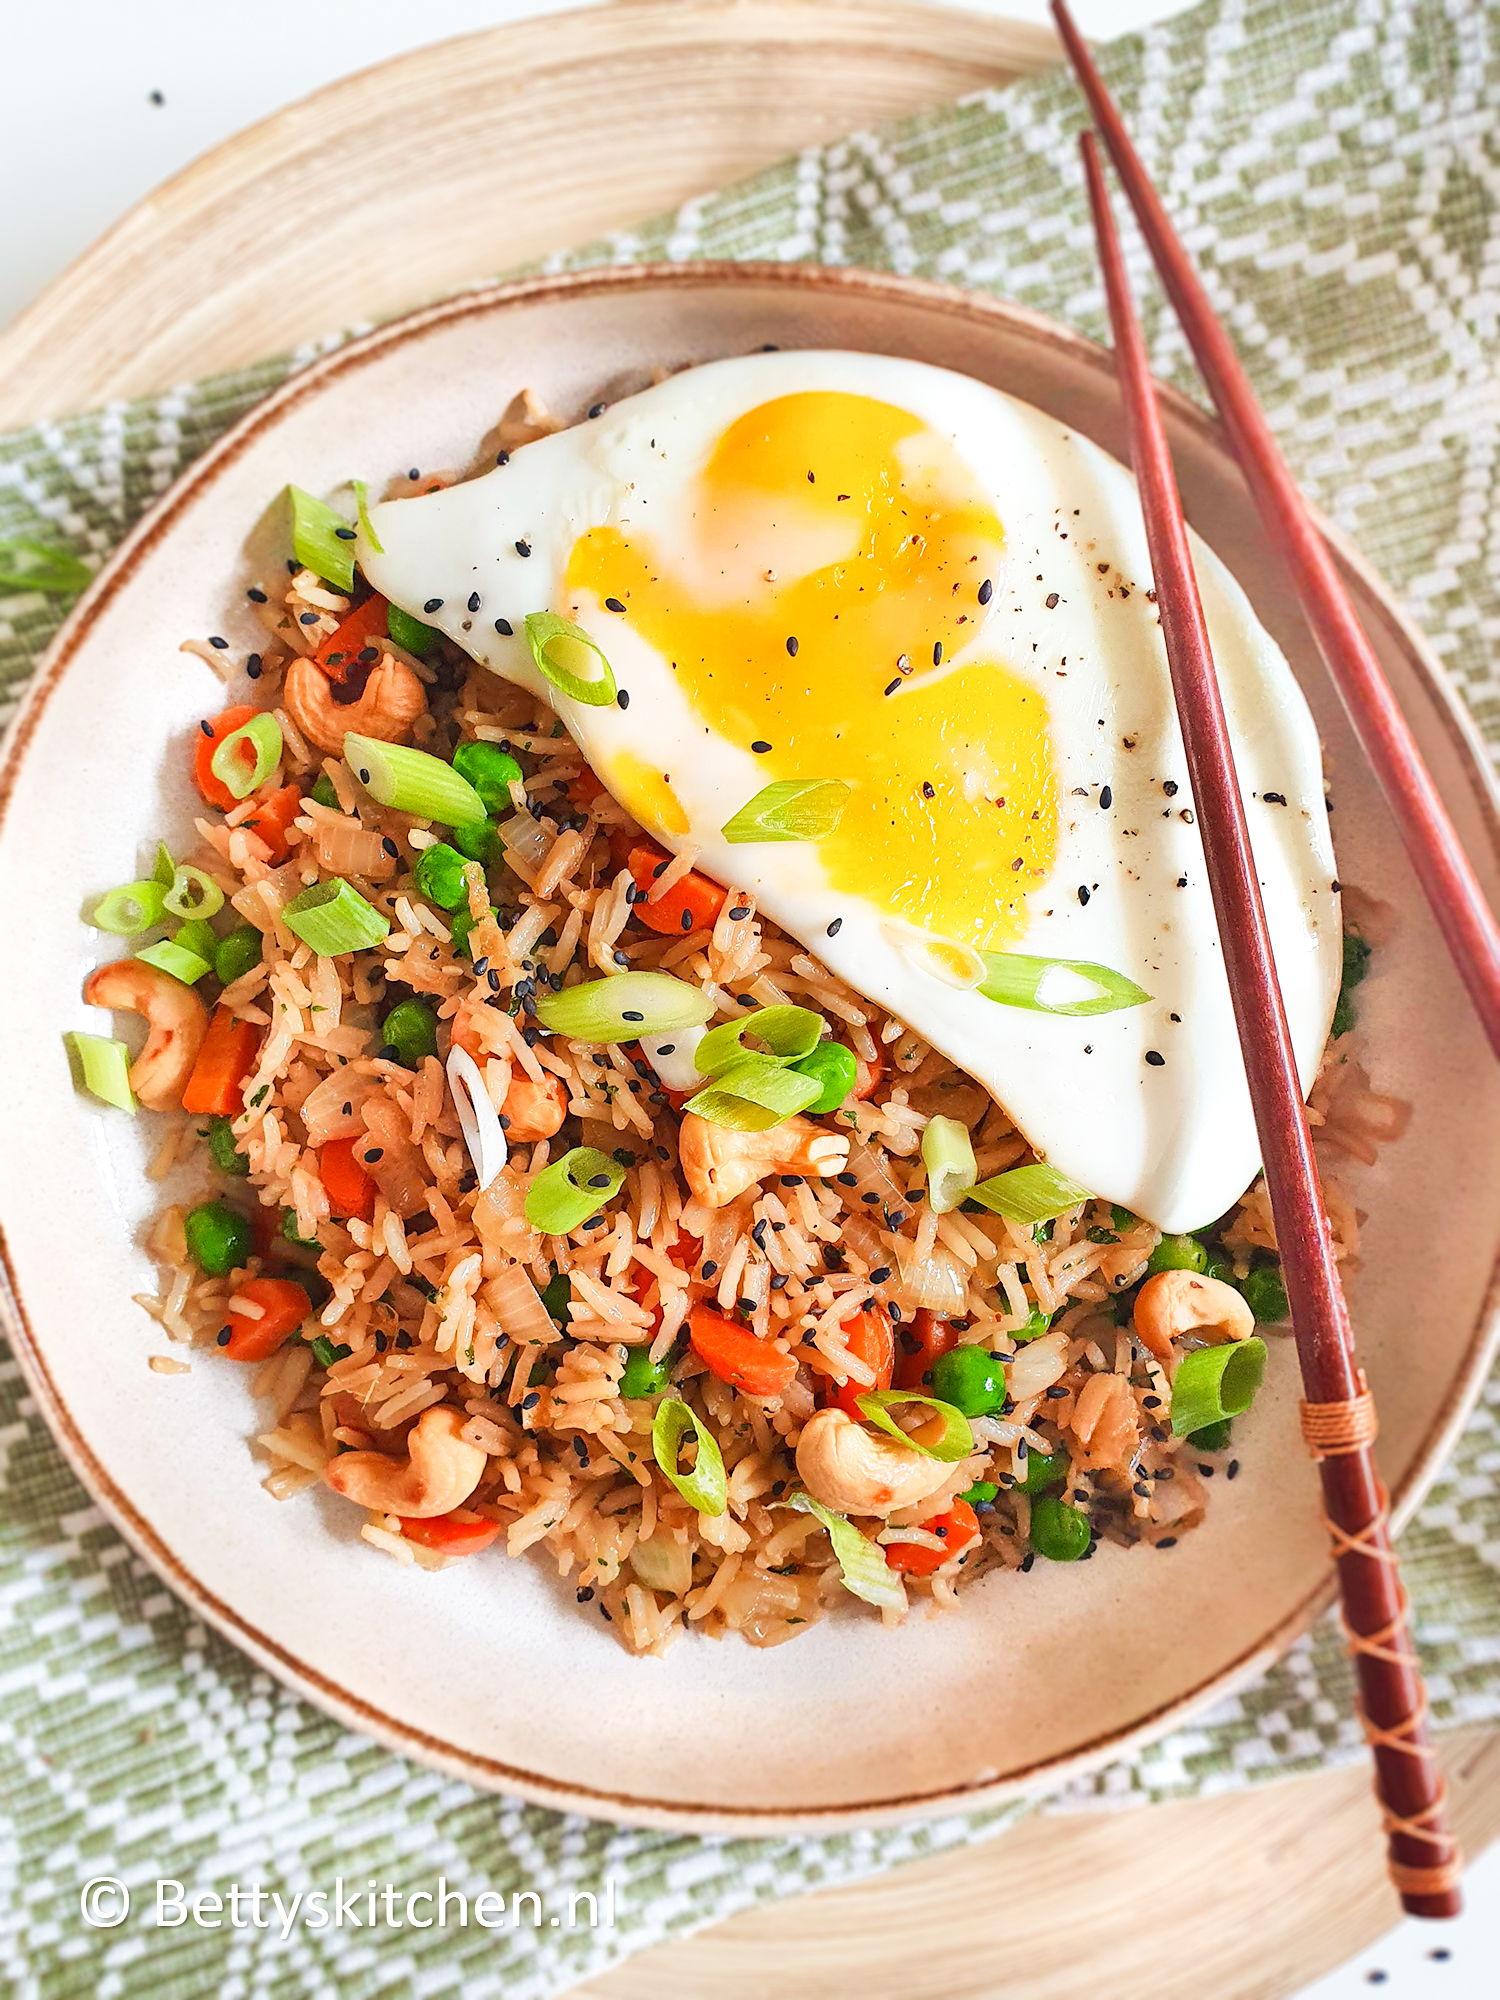 Geheim Welkom vocaal Gebakken rijst met ei (fried rice) | Recept | Betty's Kitchen